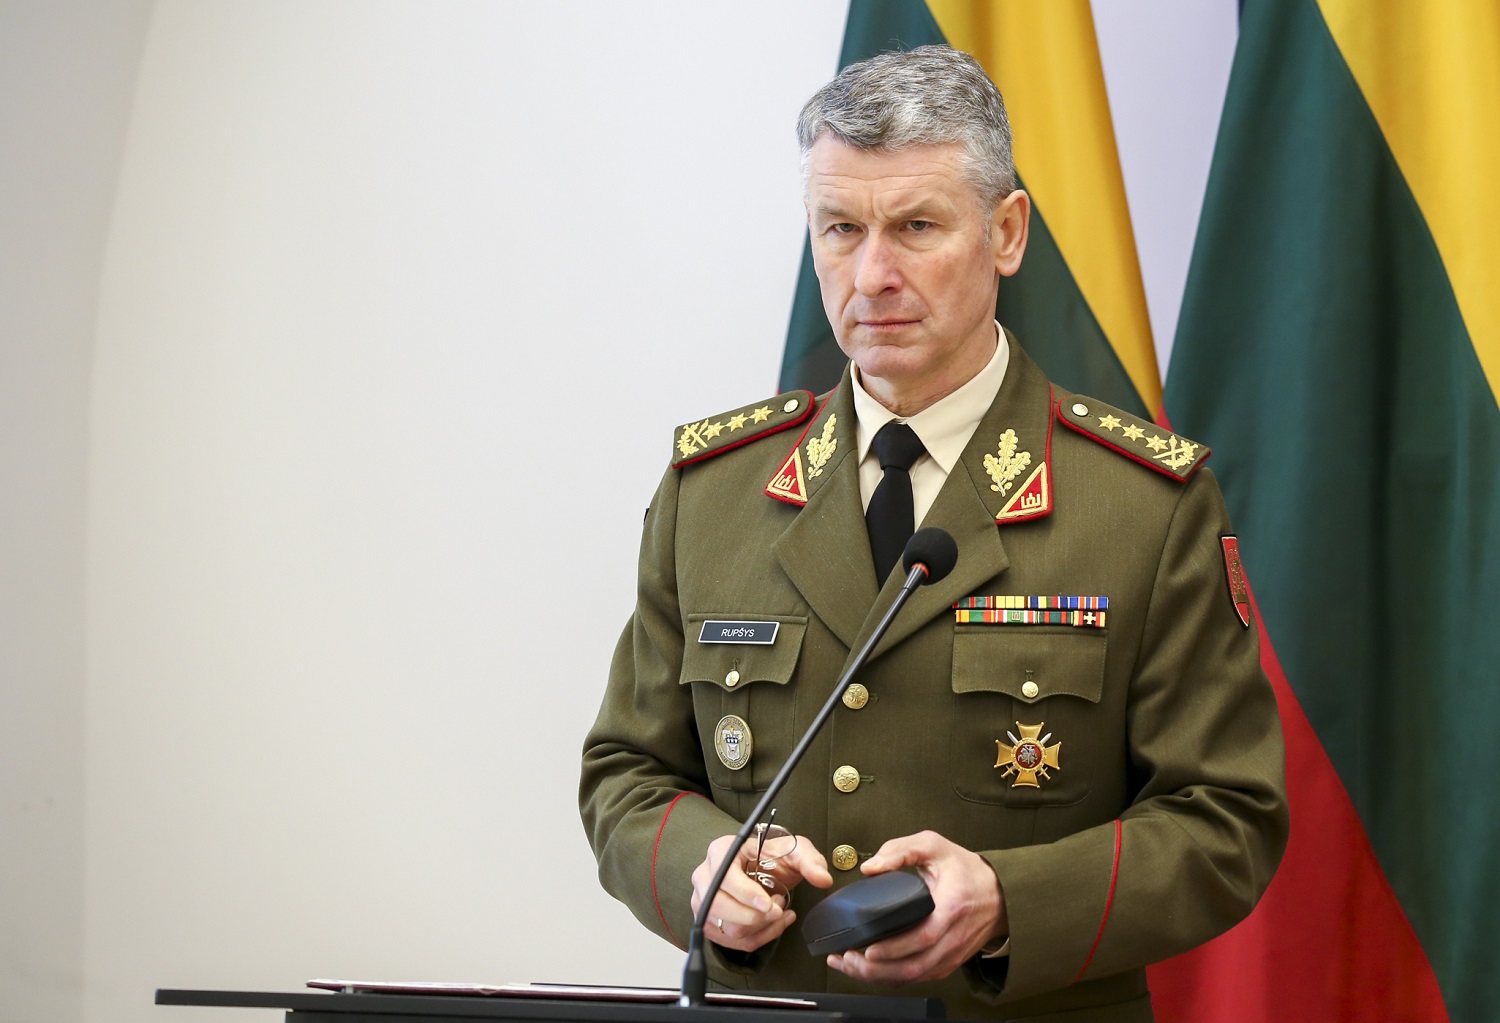 Kariuomenės vadas: jei Lietuvai kiltų grėsmė, ją gintų ne brigada, o daug gausesnės NATO pajėgos